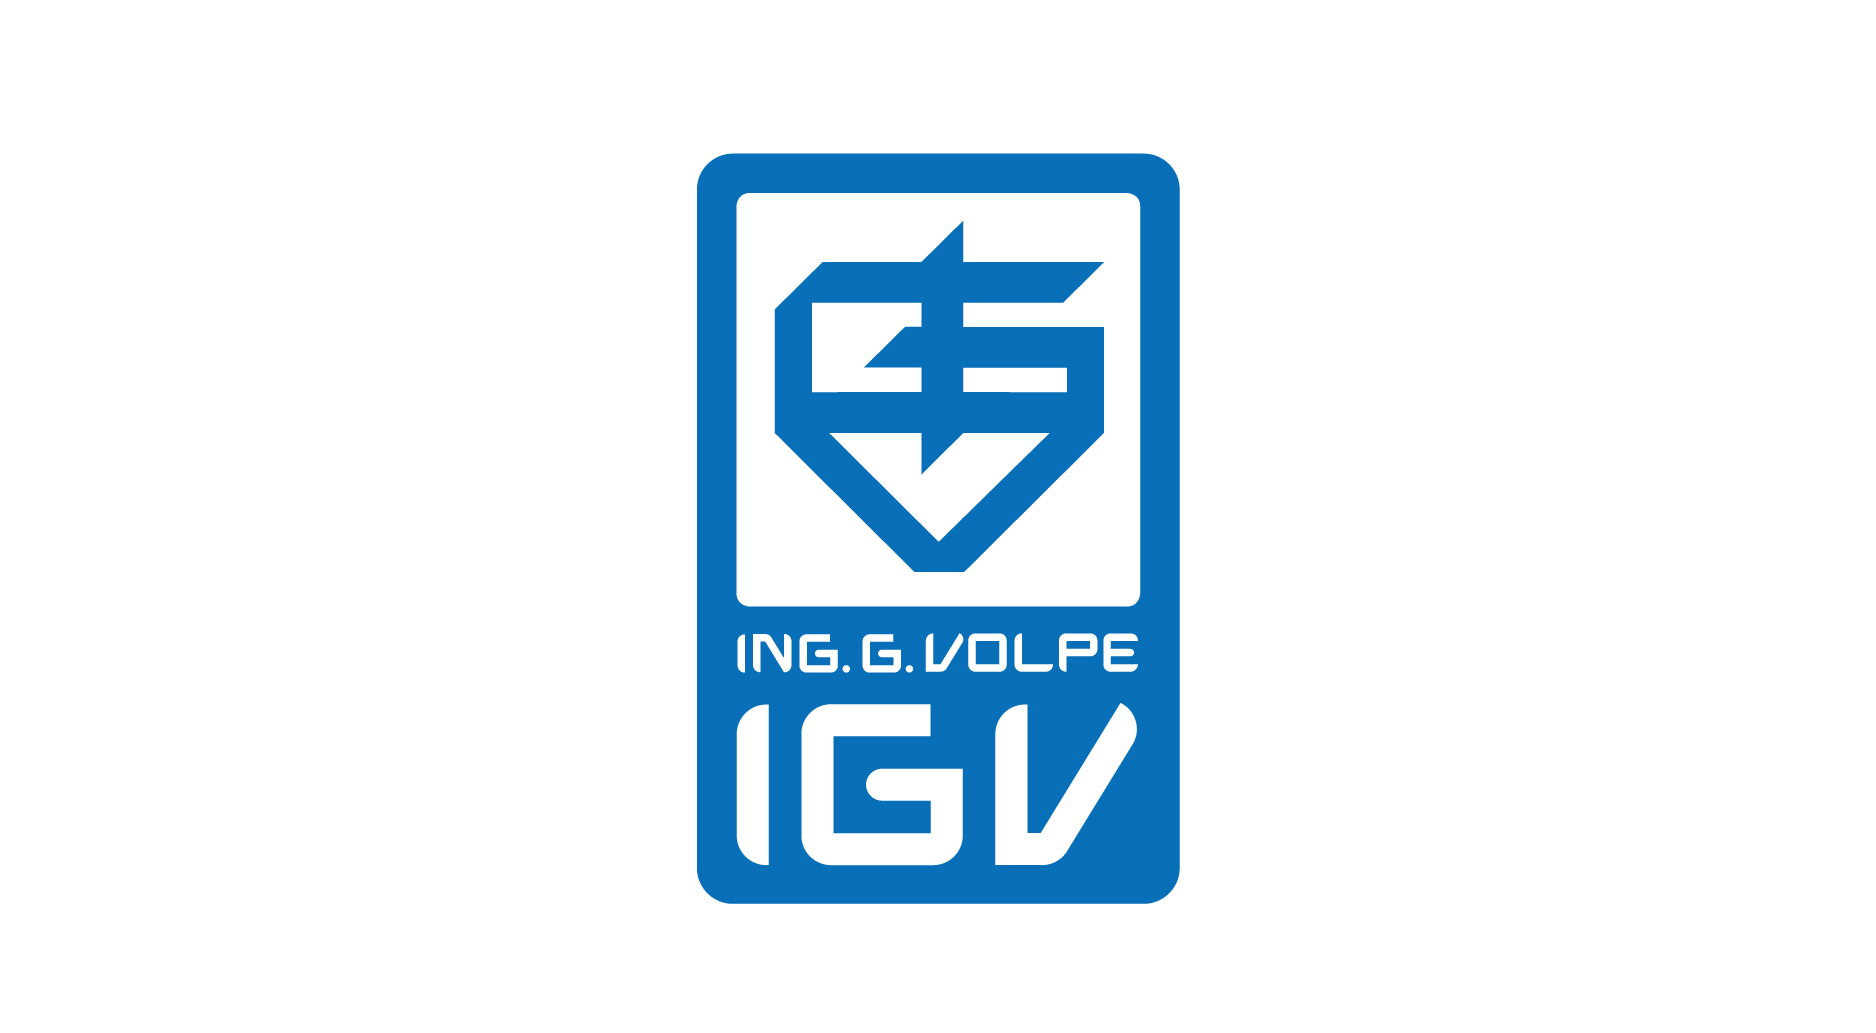 Trở thành đối tác độc quyền của Tập đoàn IGV (Italia) và Nippon Lift (Nhật Bản). Cung cấp sản phẩm, dịch vụ kỹ thuật ở cả 3 nước Việt Nam - Lào - Campuchia.